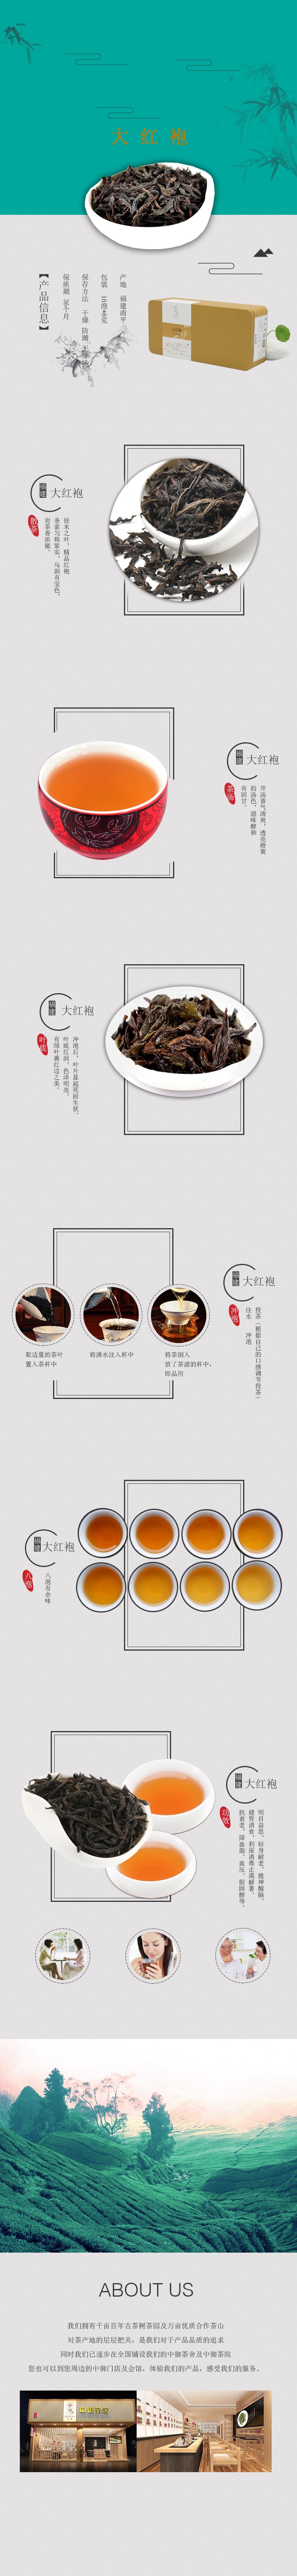 茶叶详情页设计模板素材